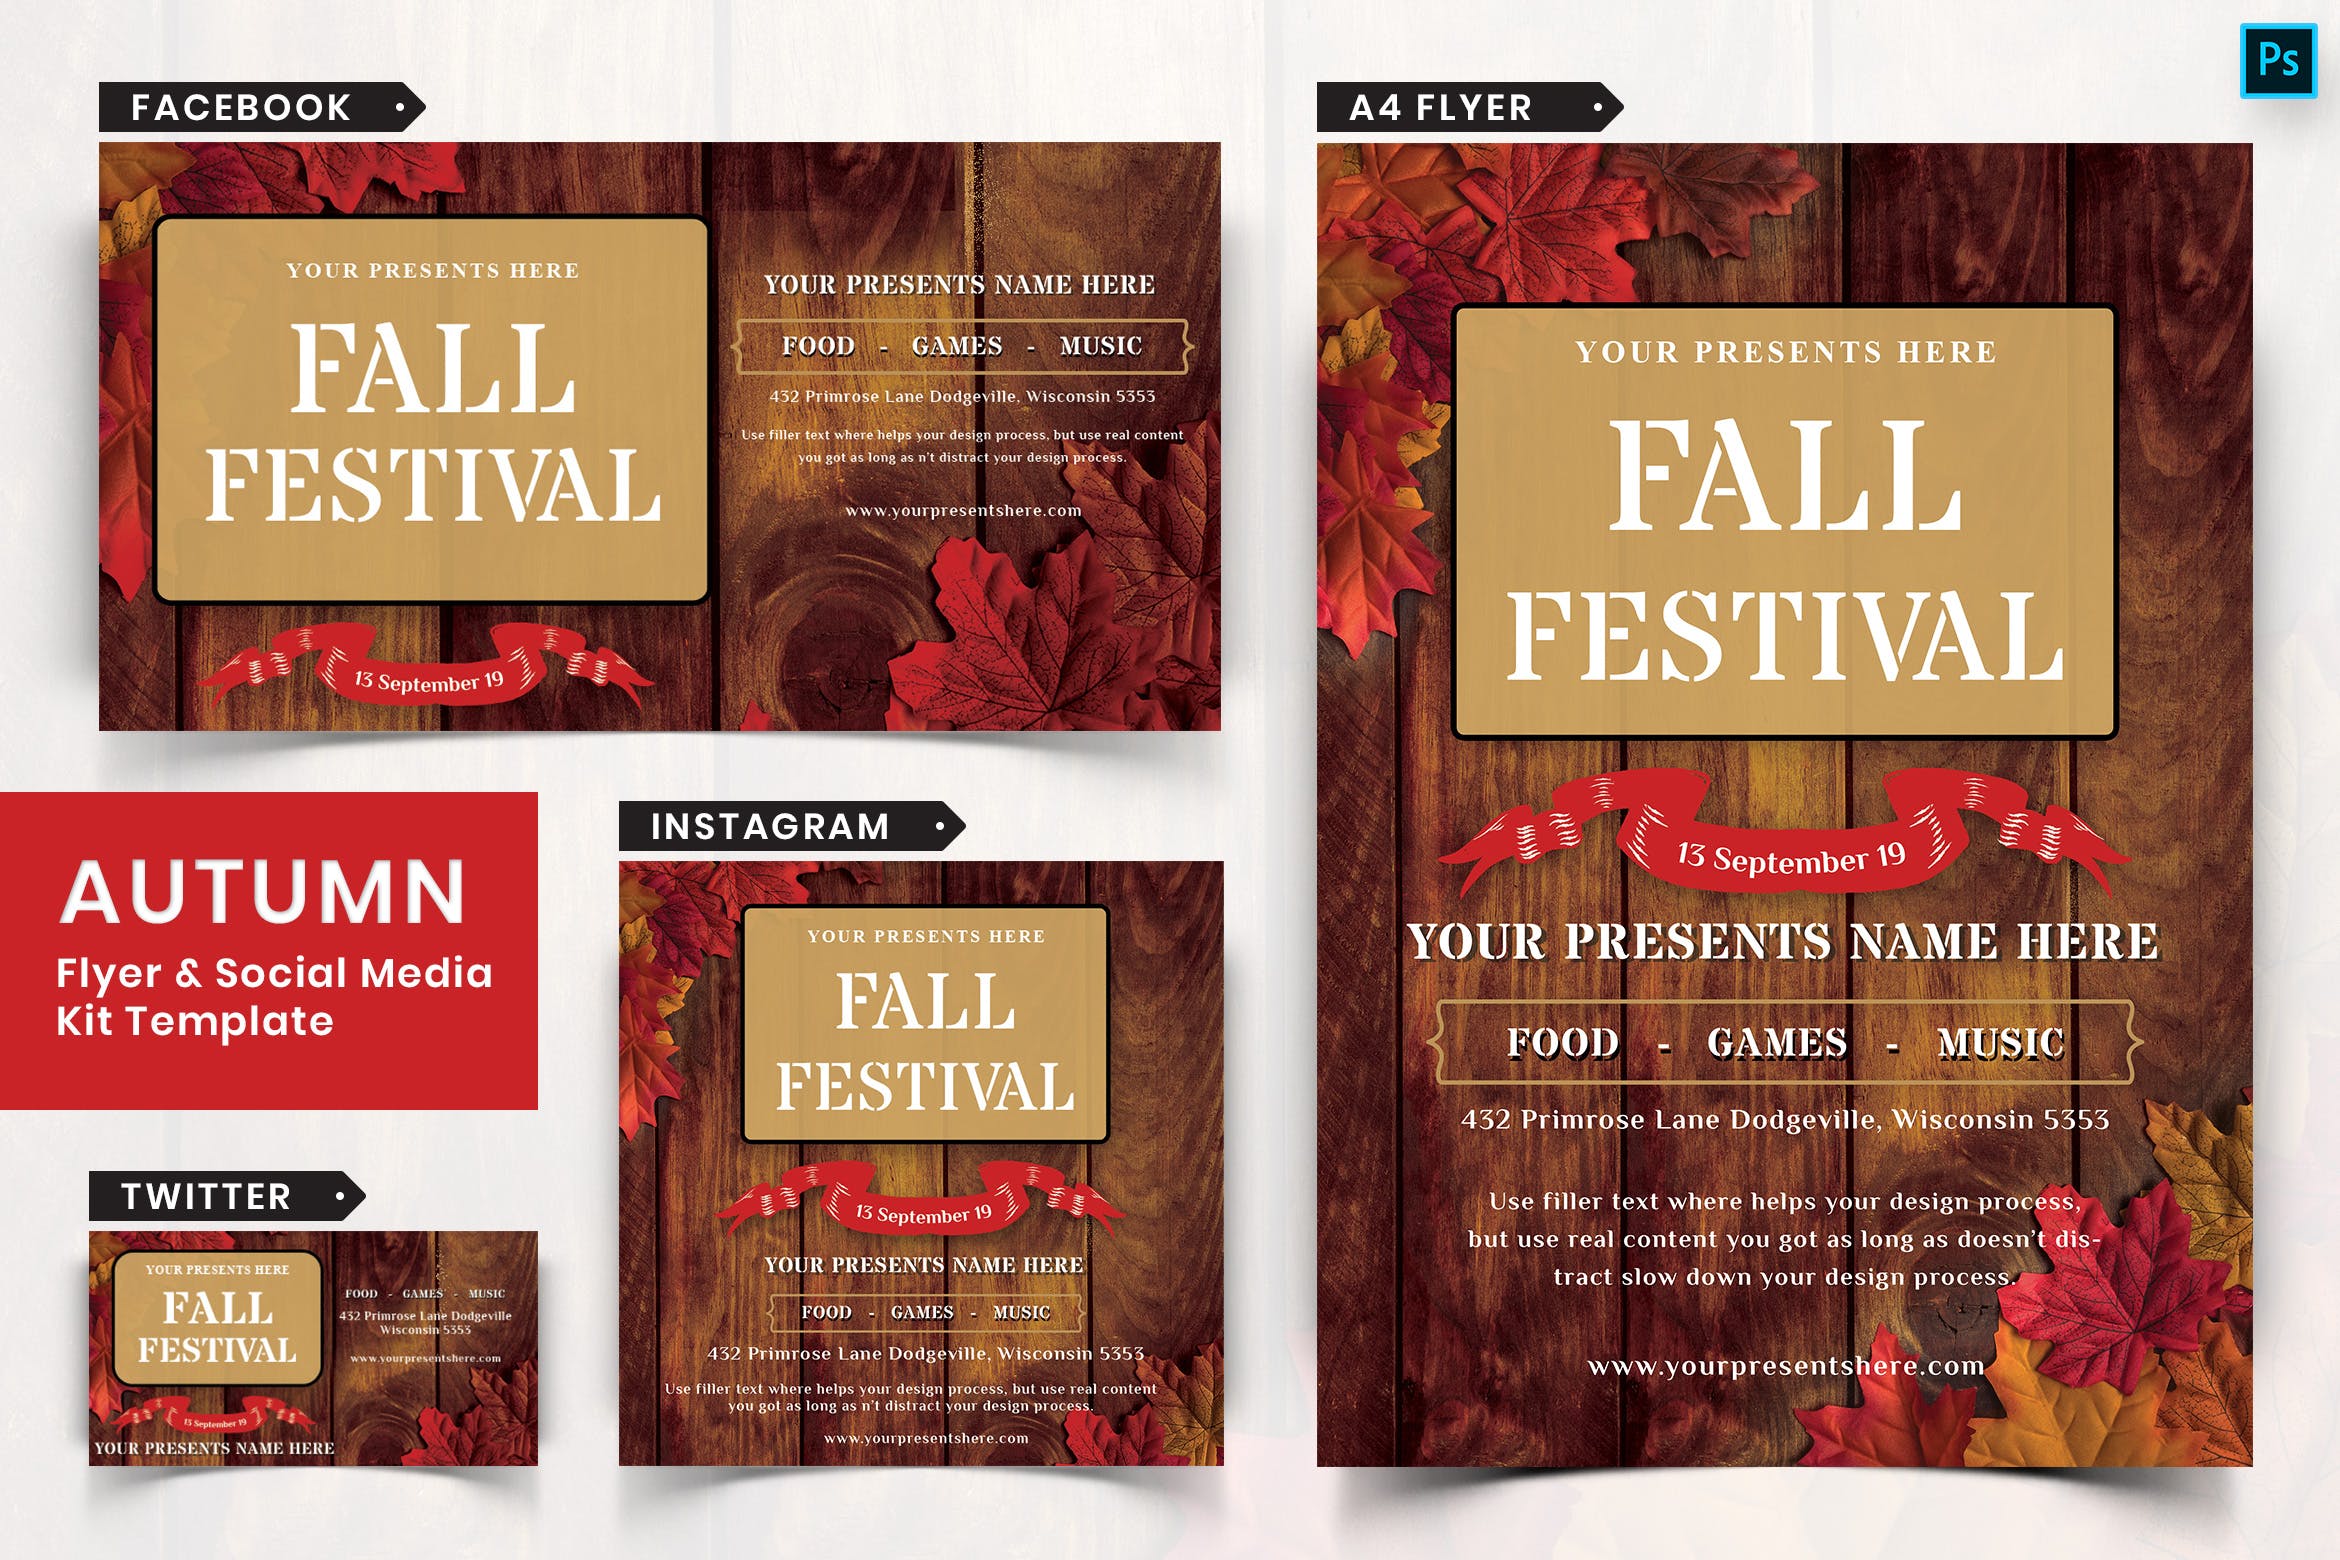 秋季节日传单和&社交媒体设计模板套装06 Autumn Festival Flyer & Social Media Pack-06插图